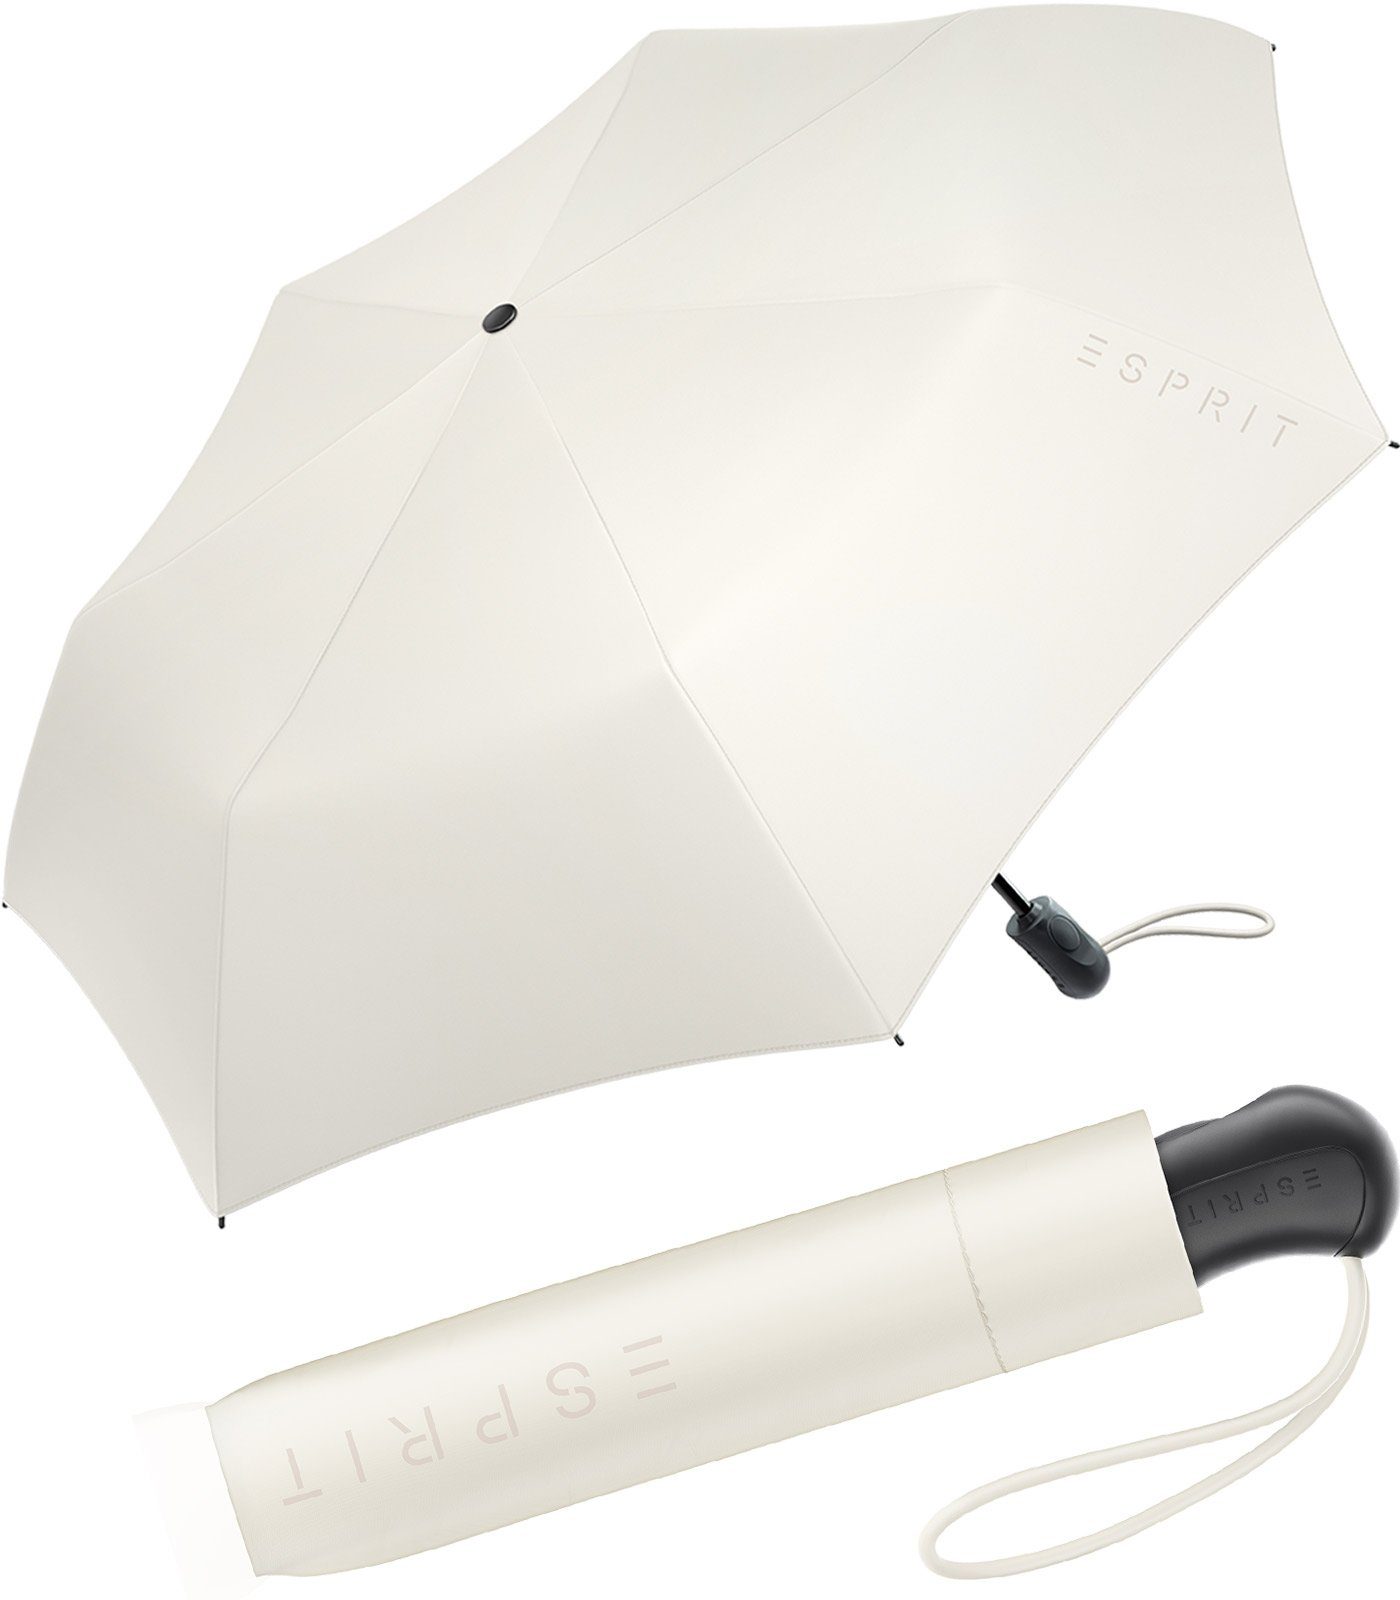 Esprit Taschenregenschirm Damen Easymatic Light Auf-Zu Automatik FJ 2022, stabil und praktisch, in den neuen Trendfarben ivory